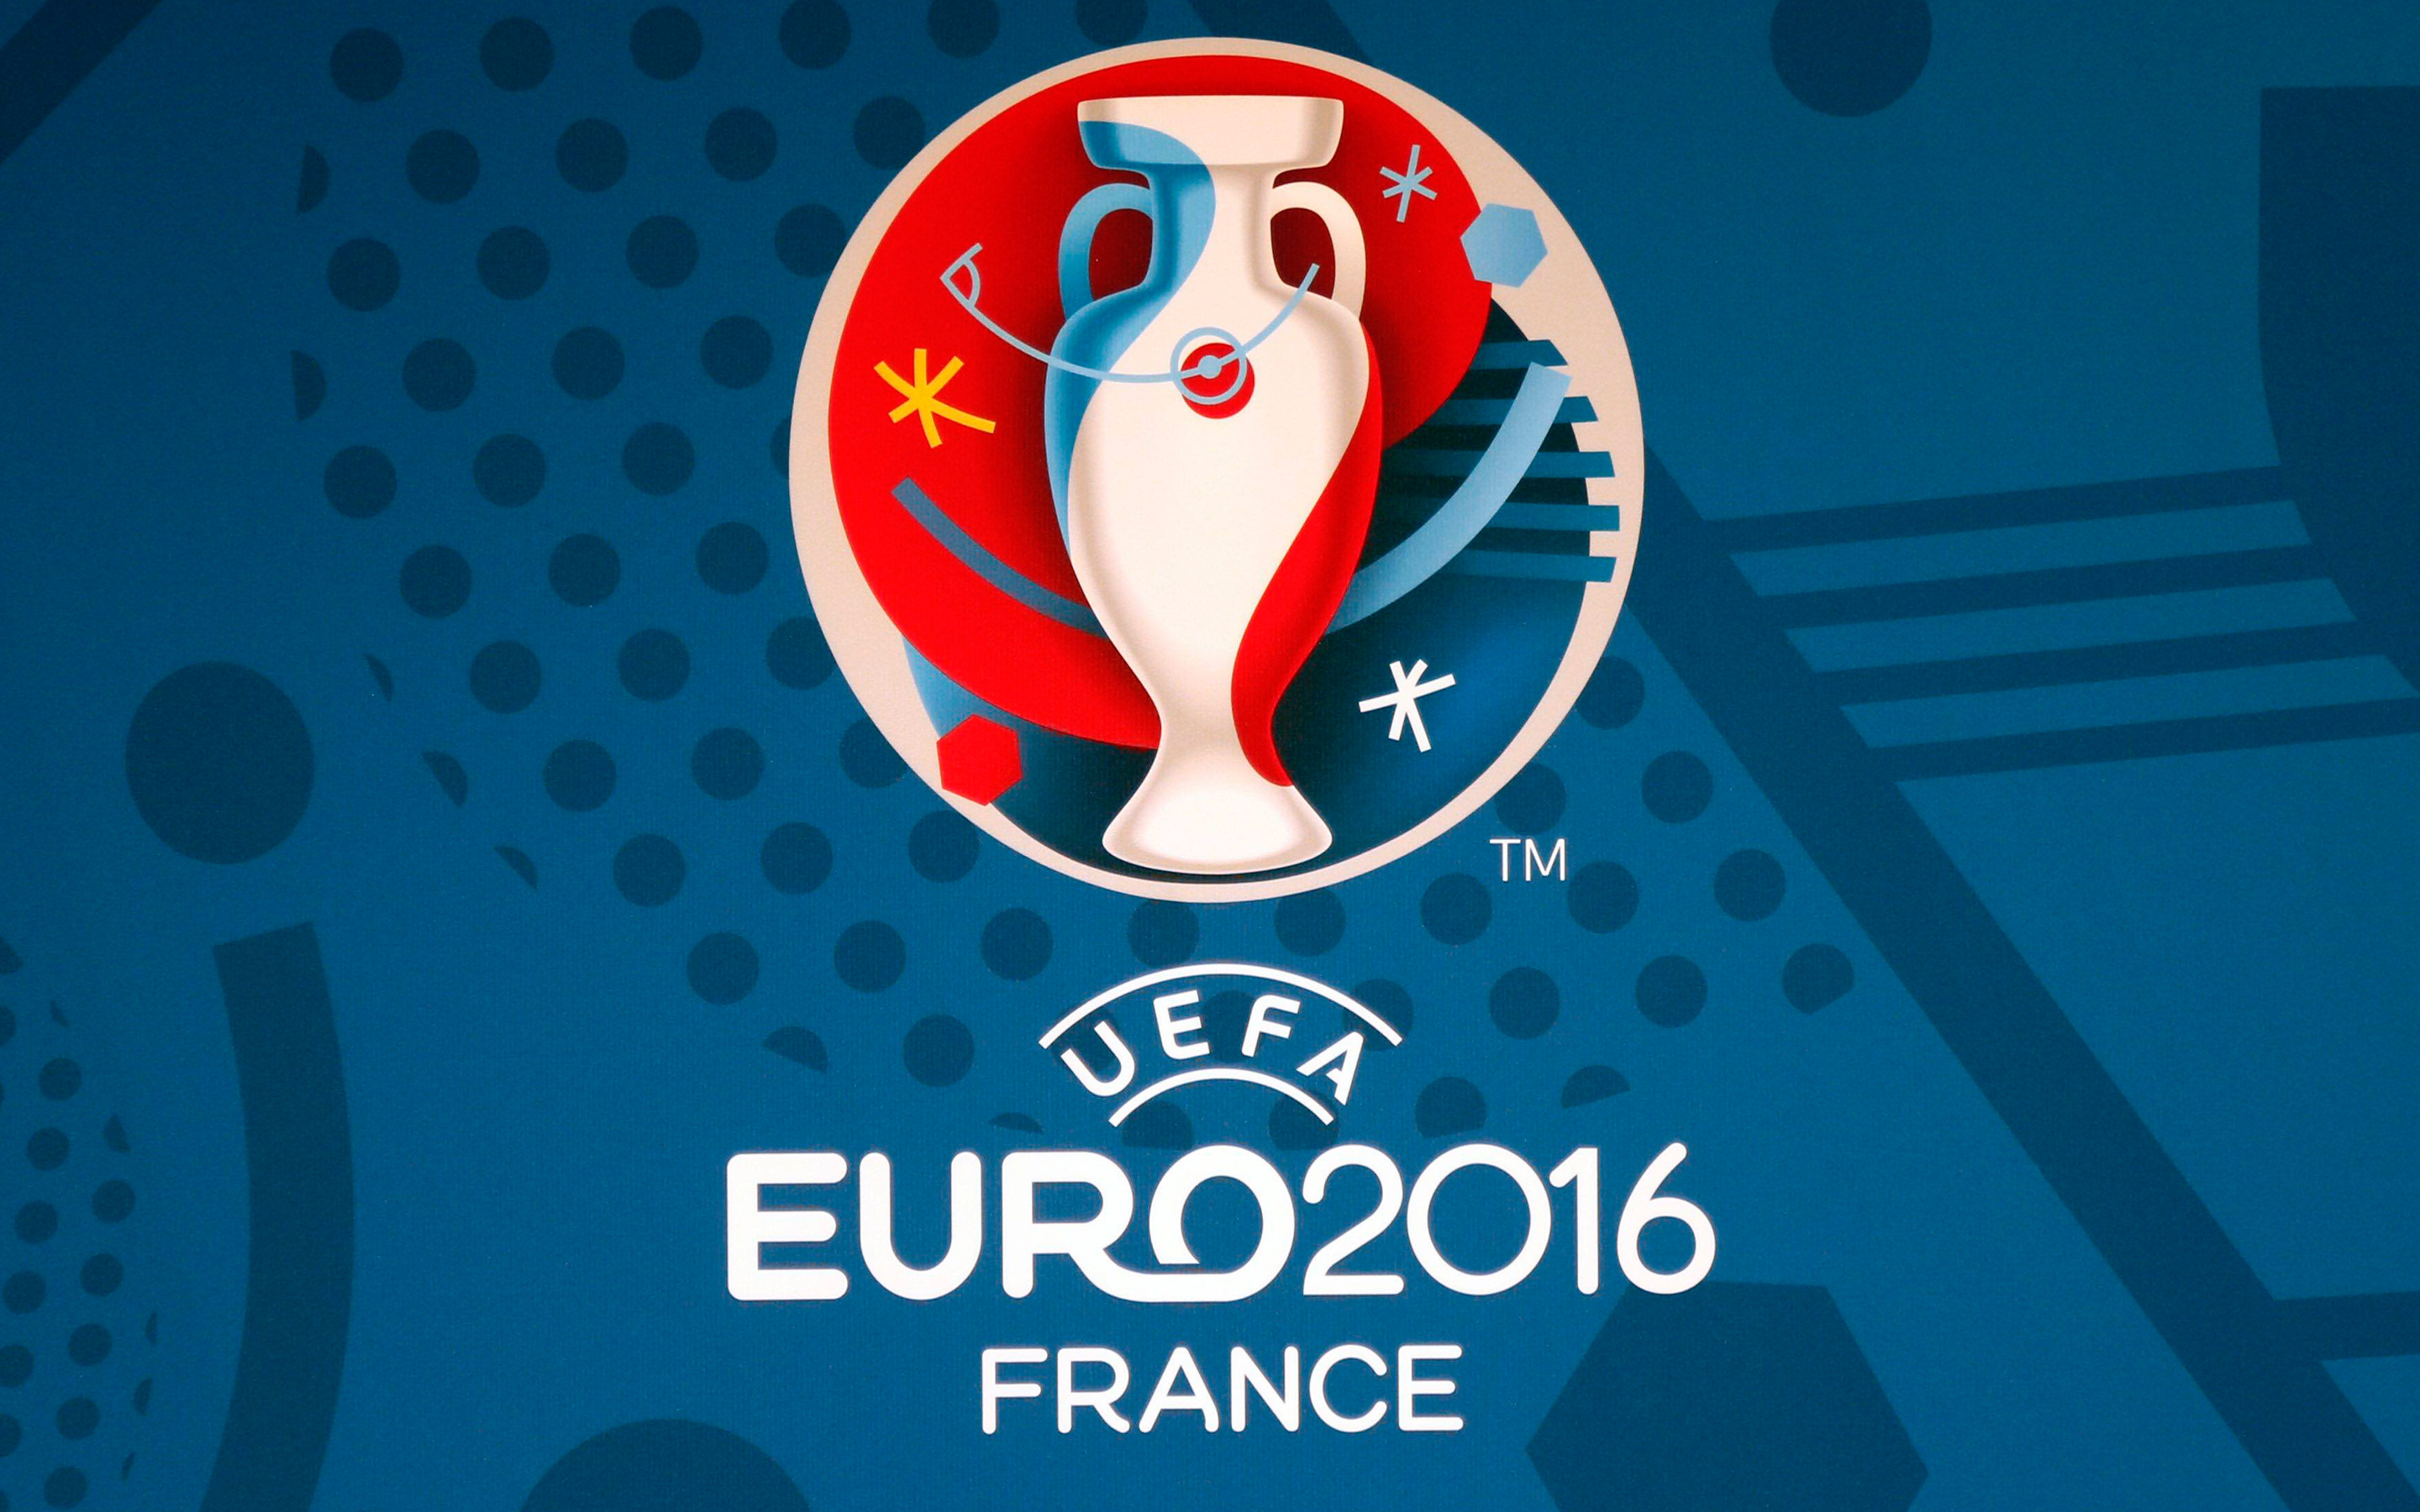 EURO 2016 Football Cup France601782573 - EURO 2016 Football Cup France - Reus, France, Football, Euro, Cup, 2016